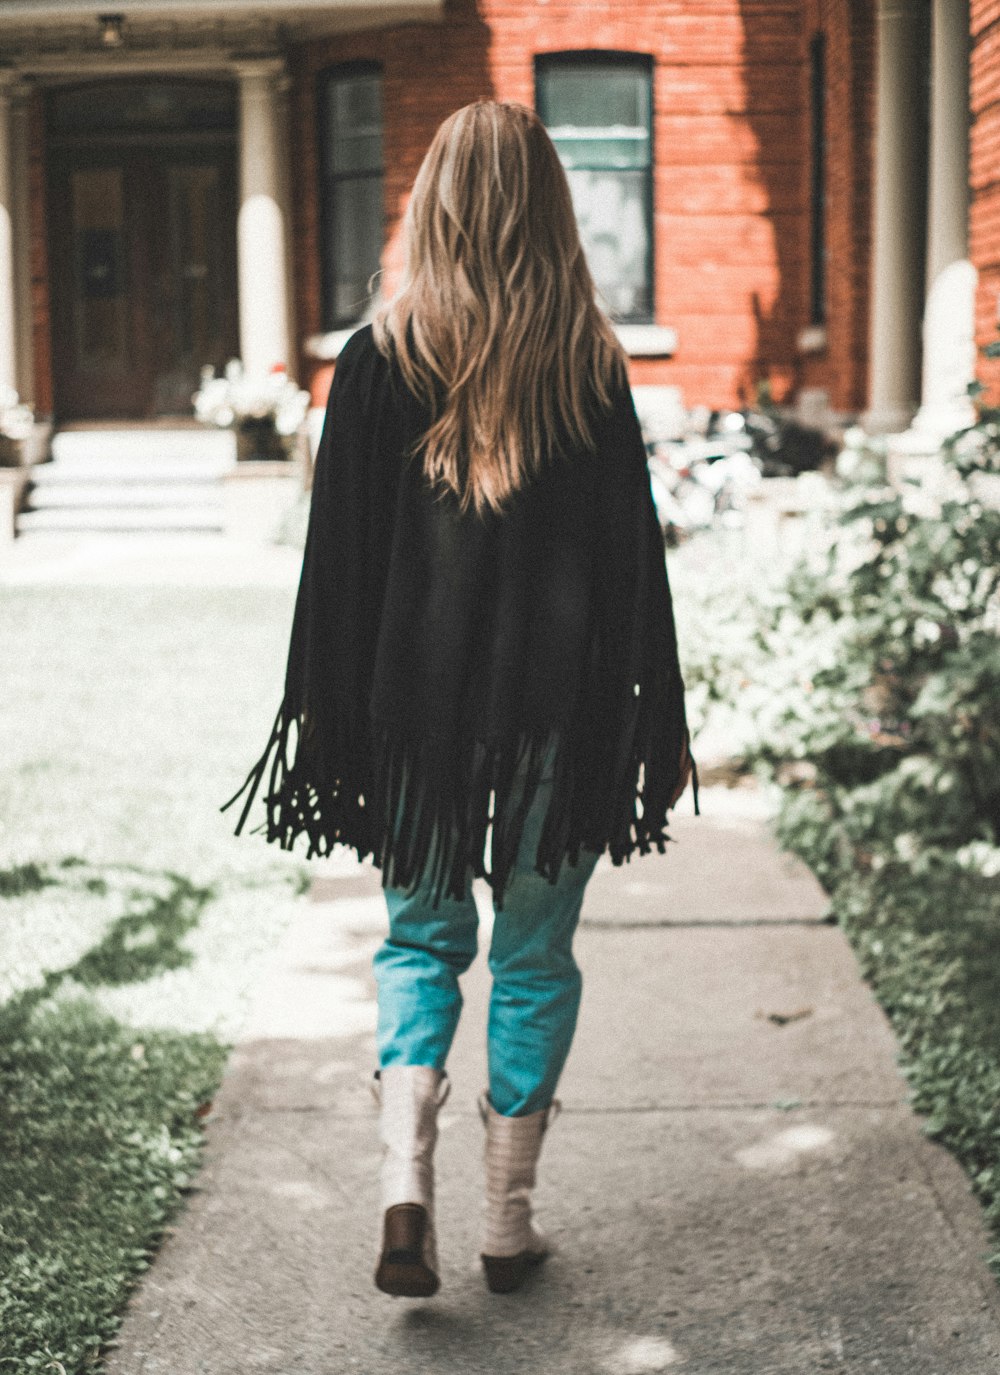 woman wearing black fringe cardigan walking on pathway